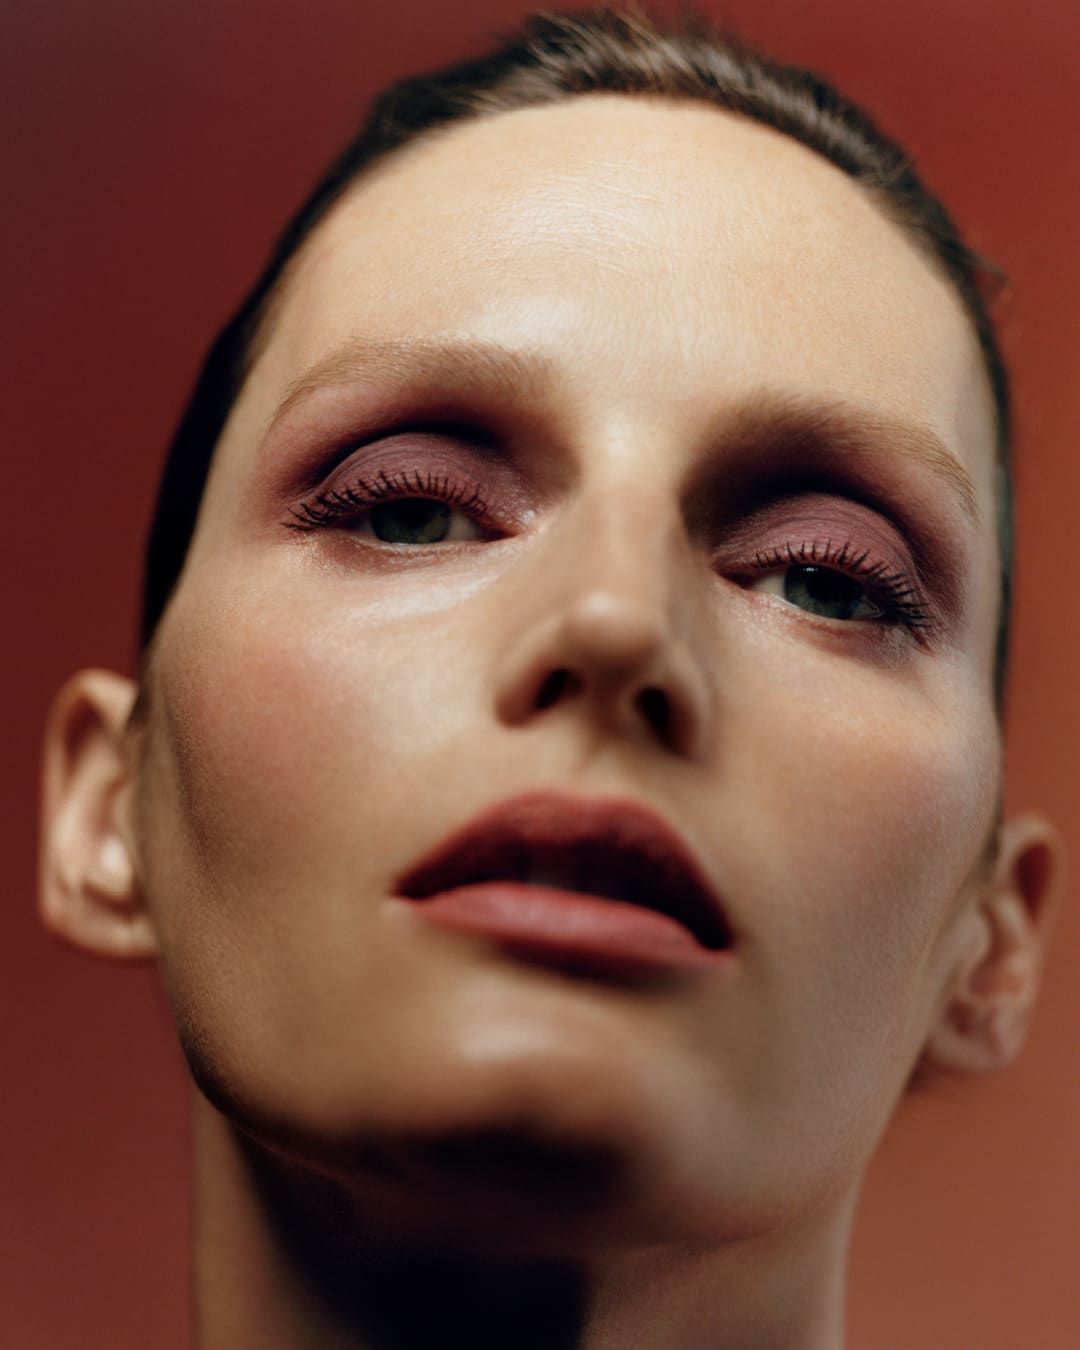 Byredo makeup enters a more sensitive era under Lucia Pica